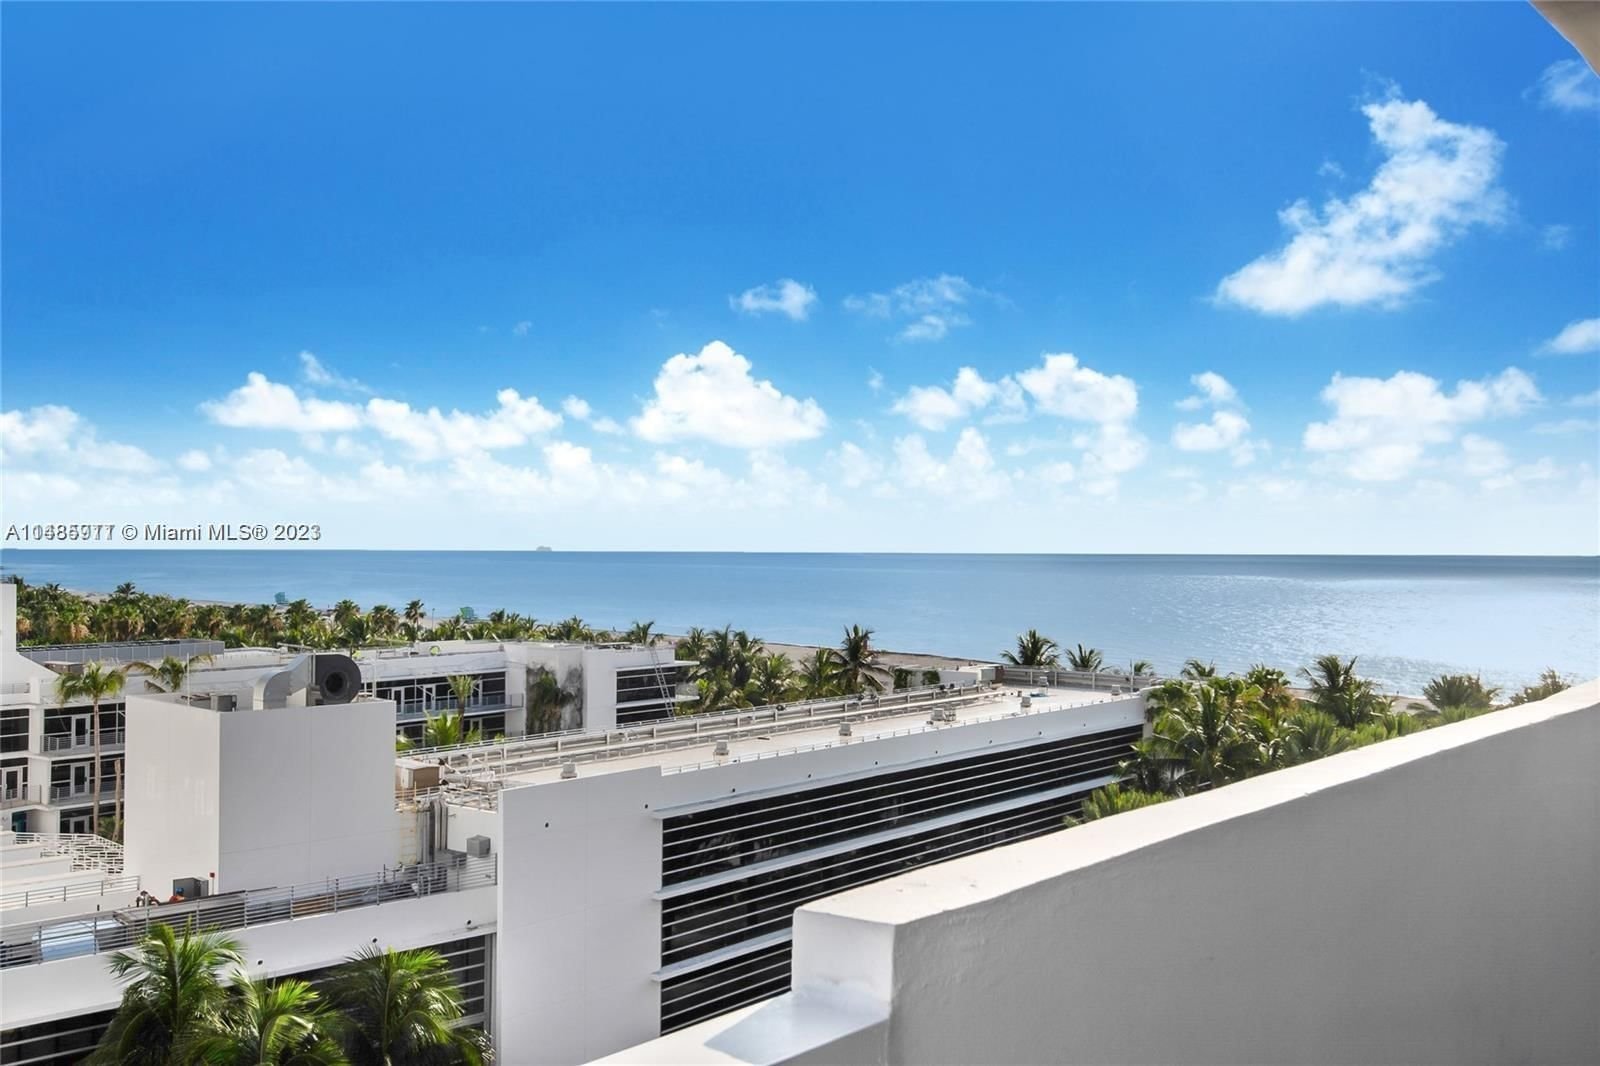 Real estate property located at 100 Lincoln Rd #827, Miami-Dade County, THE DECOPLAGE CONDO, Miami Beach, FL